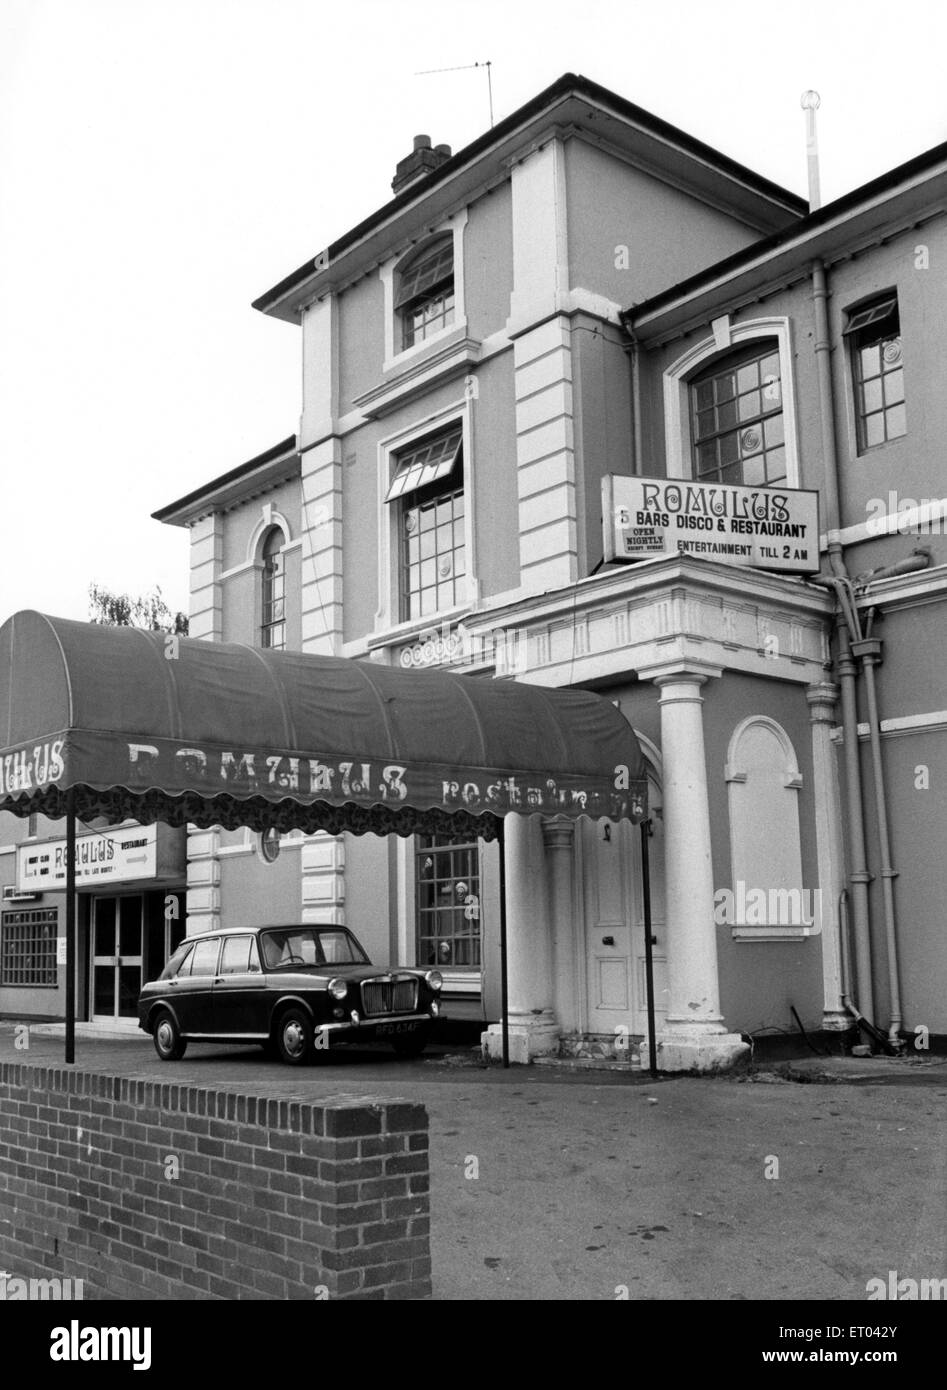 Romulus une discothèque et un restaurant. Vers les années 1970. Banque D'Images